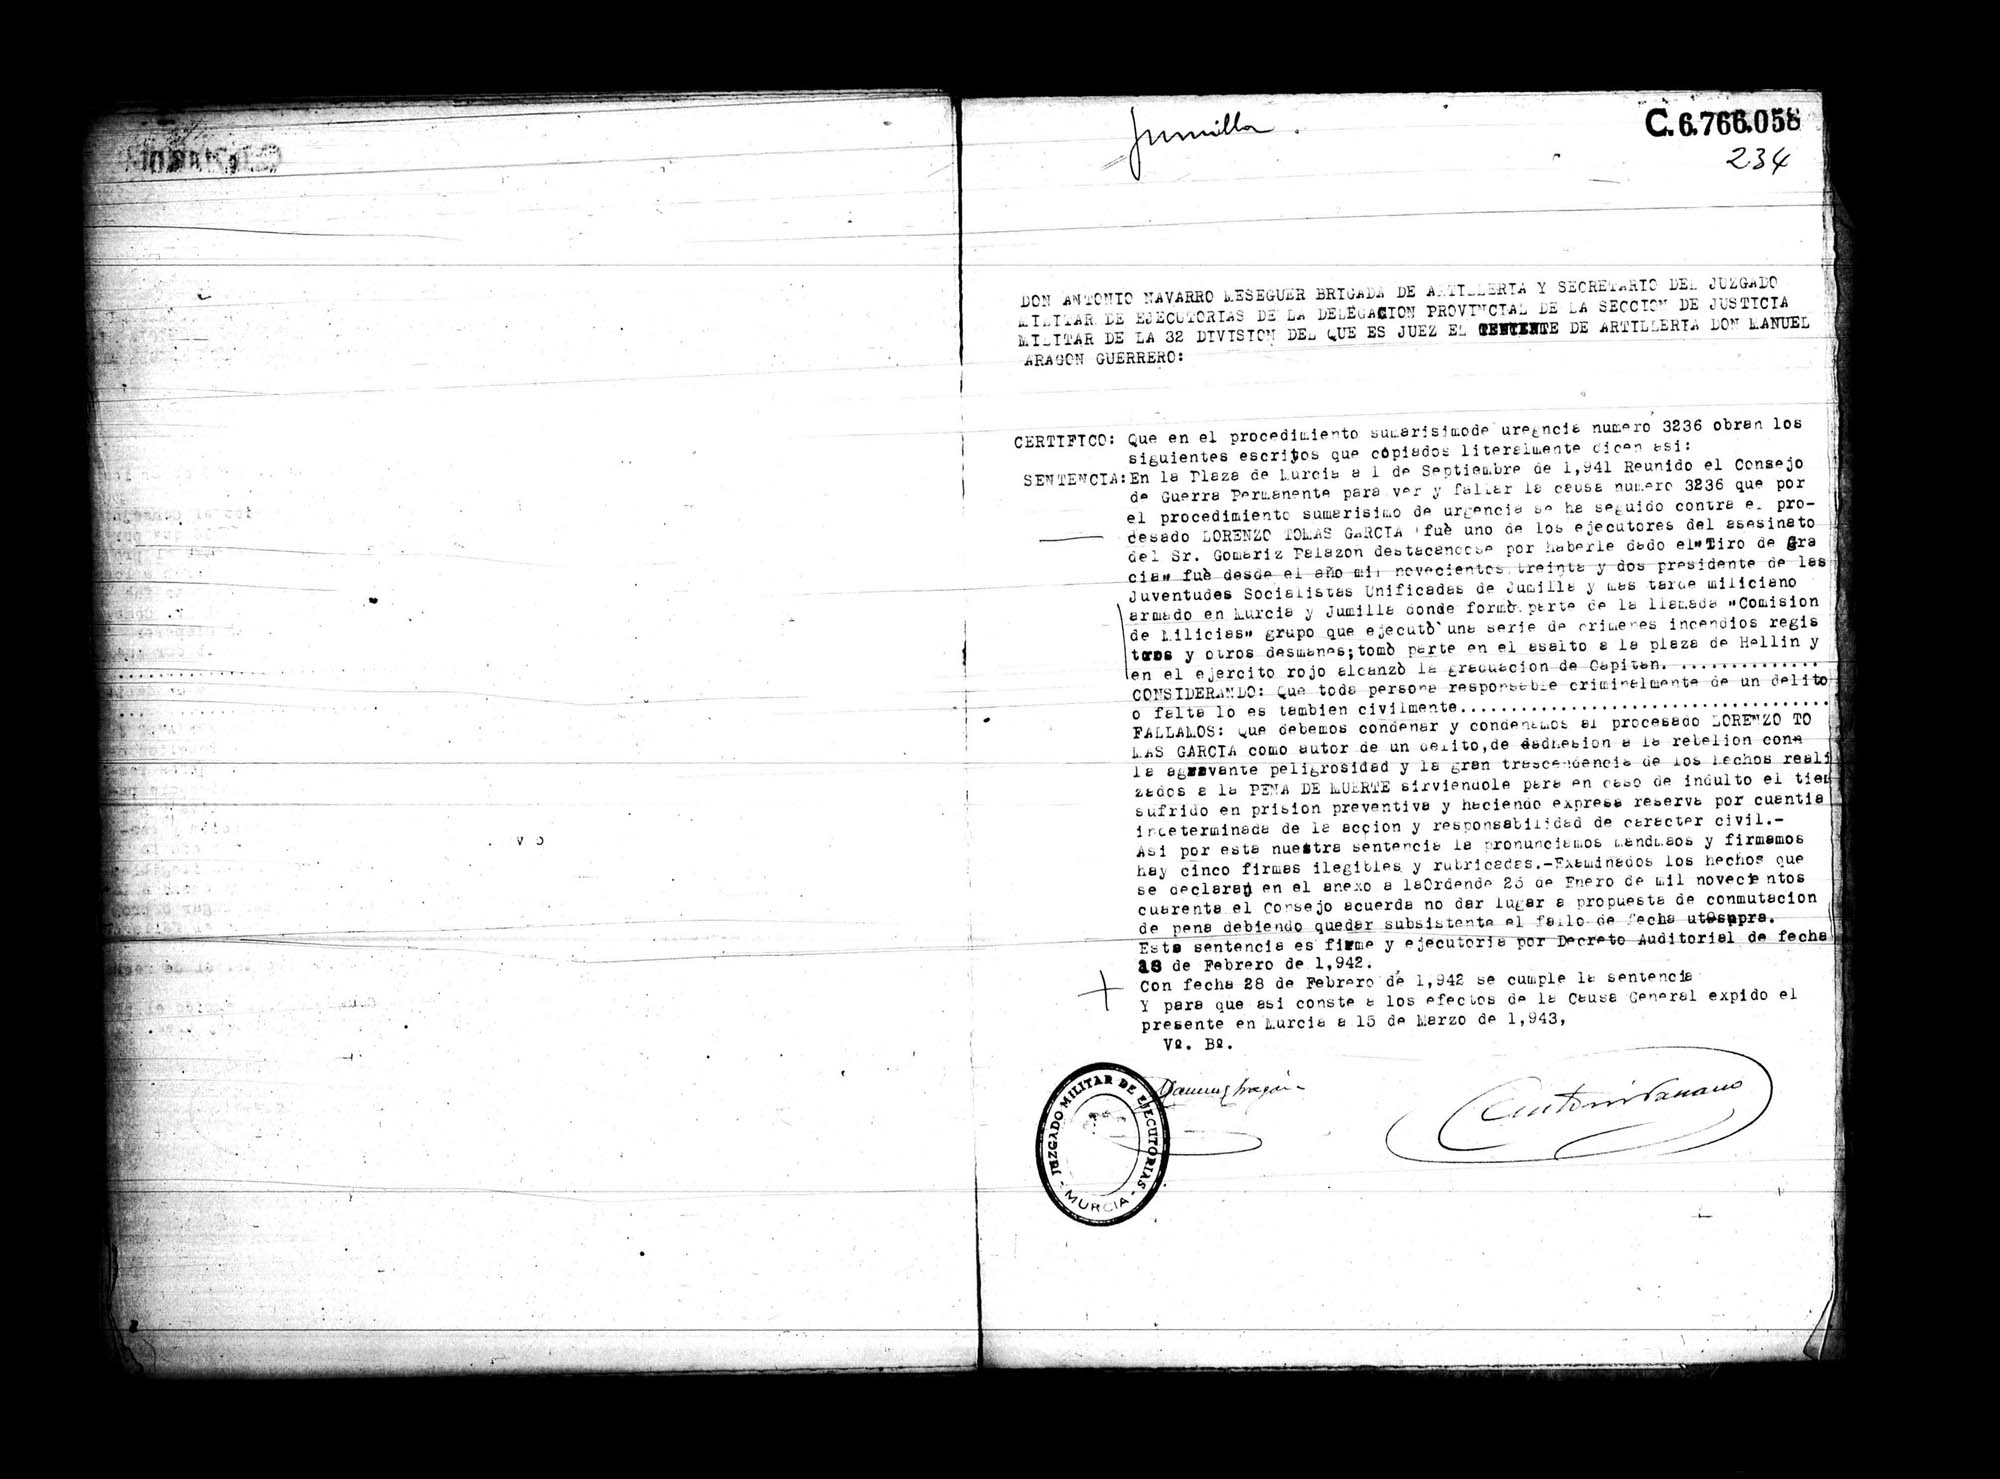 Certificado de la sentencia pronunciada contra Lorenzo Tomás García, causa 3236, el 1 de septiembre de 1941 en Murcia.